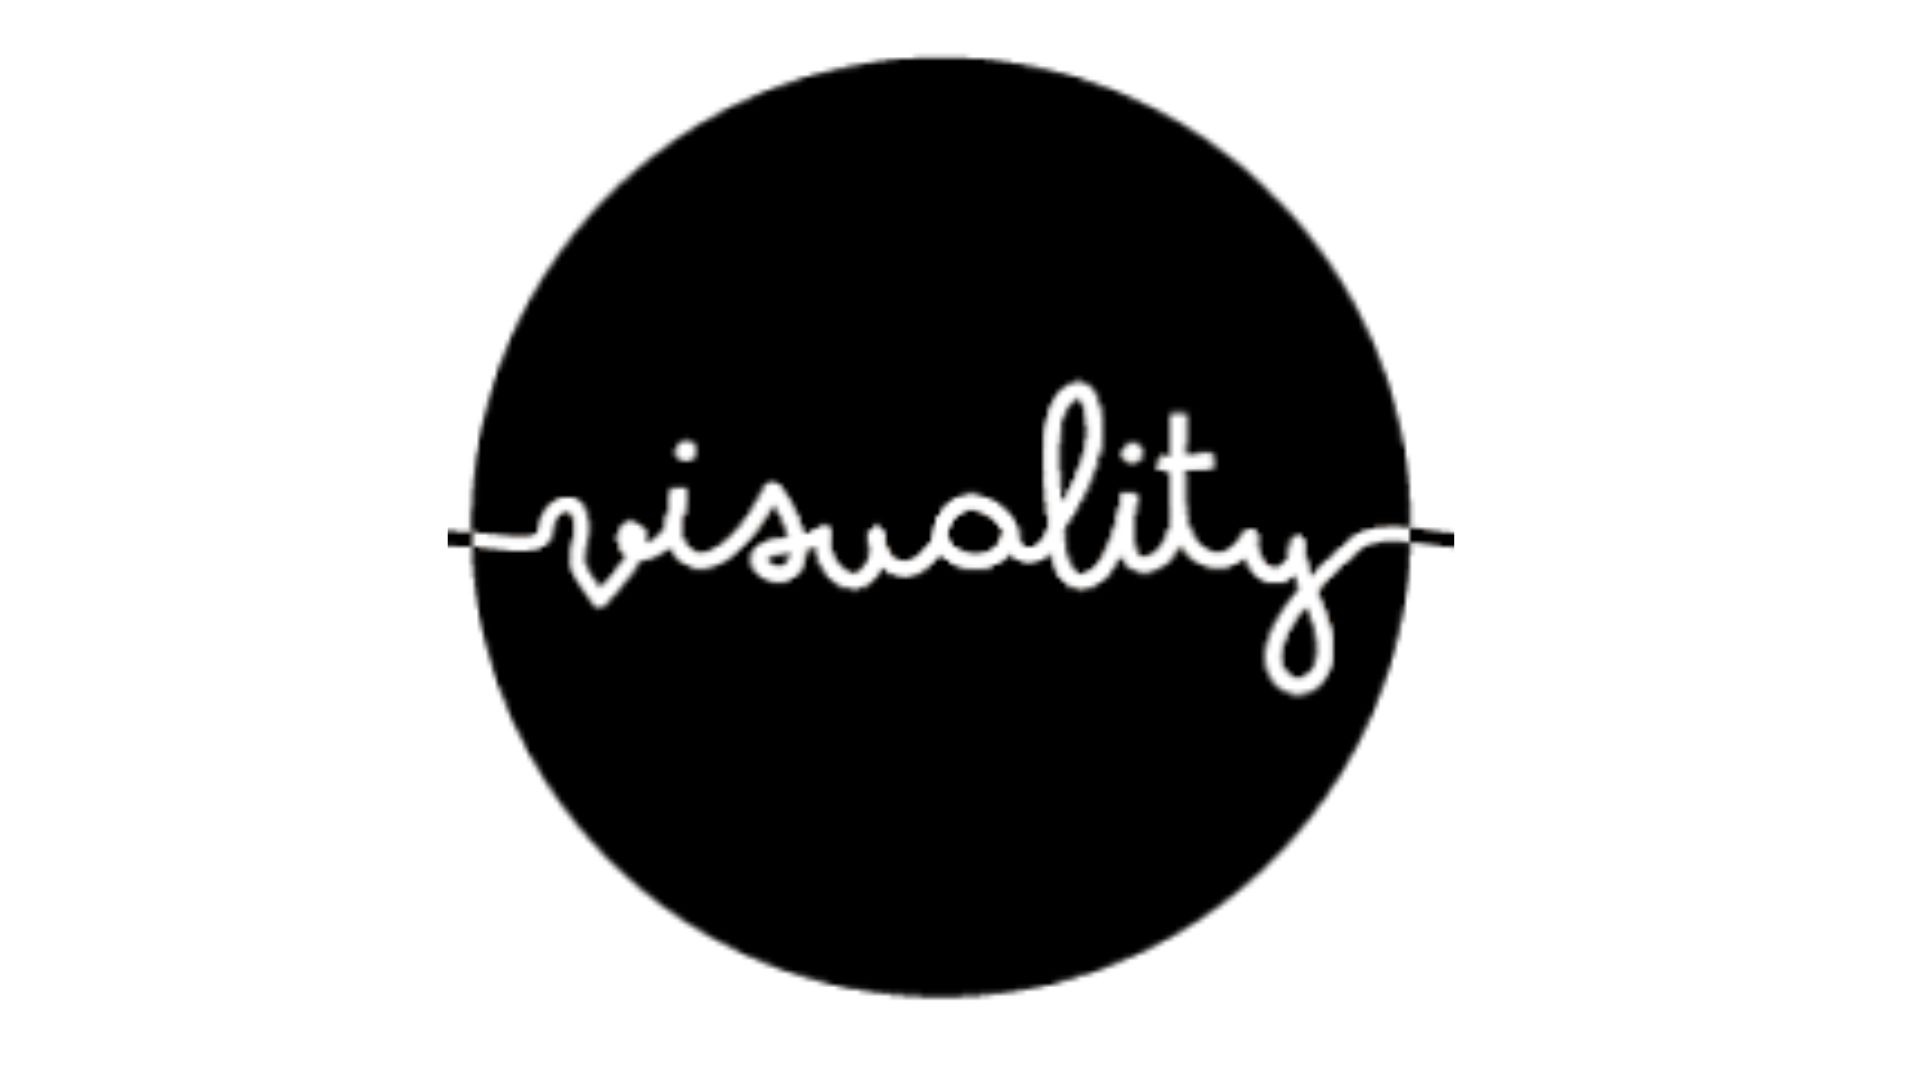 logo visuality (canva)